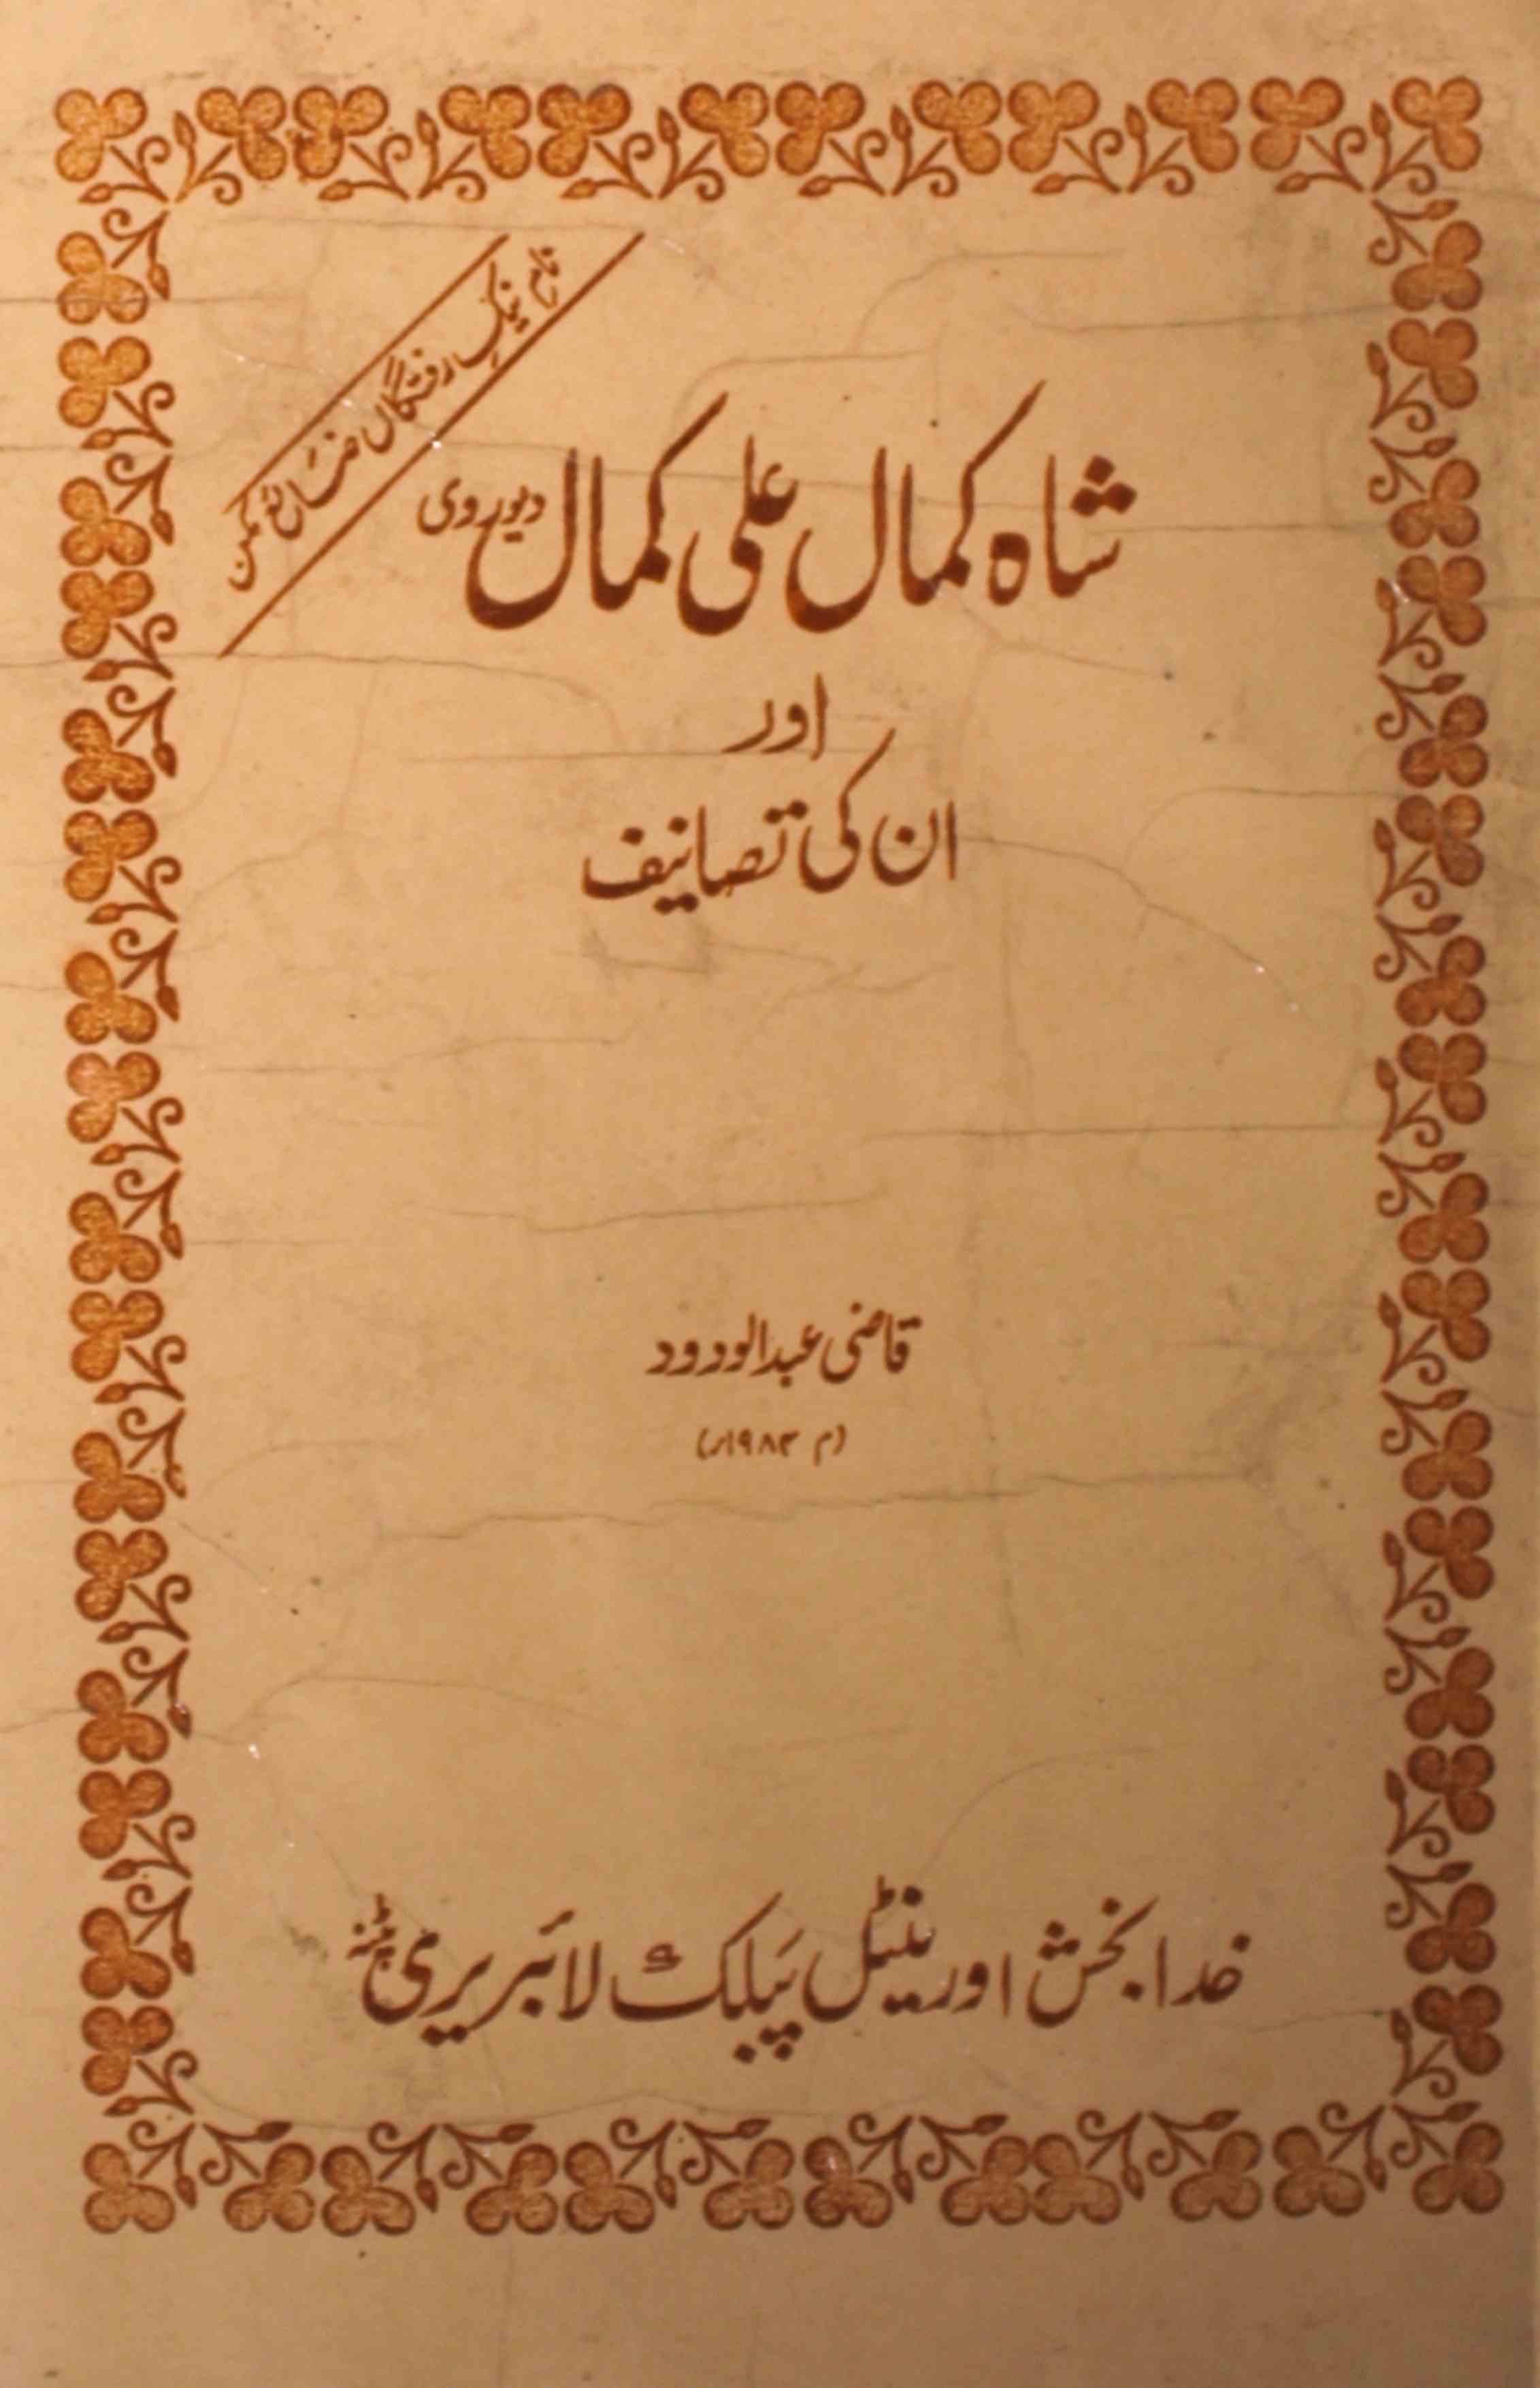 شاہ کمال علی کمال اور ان کی تصانیف